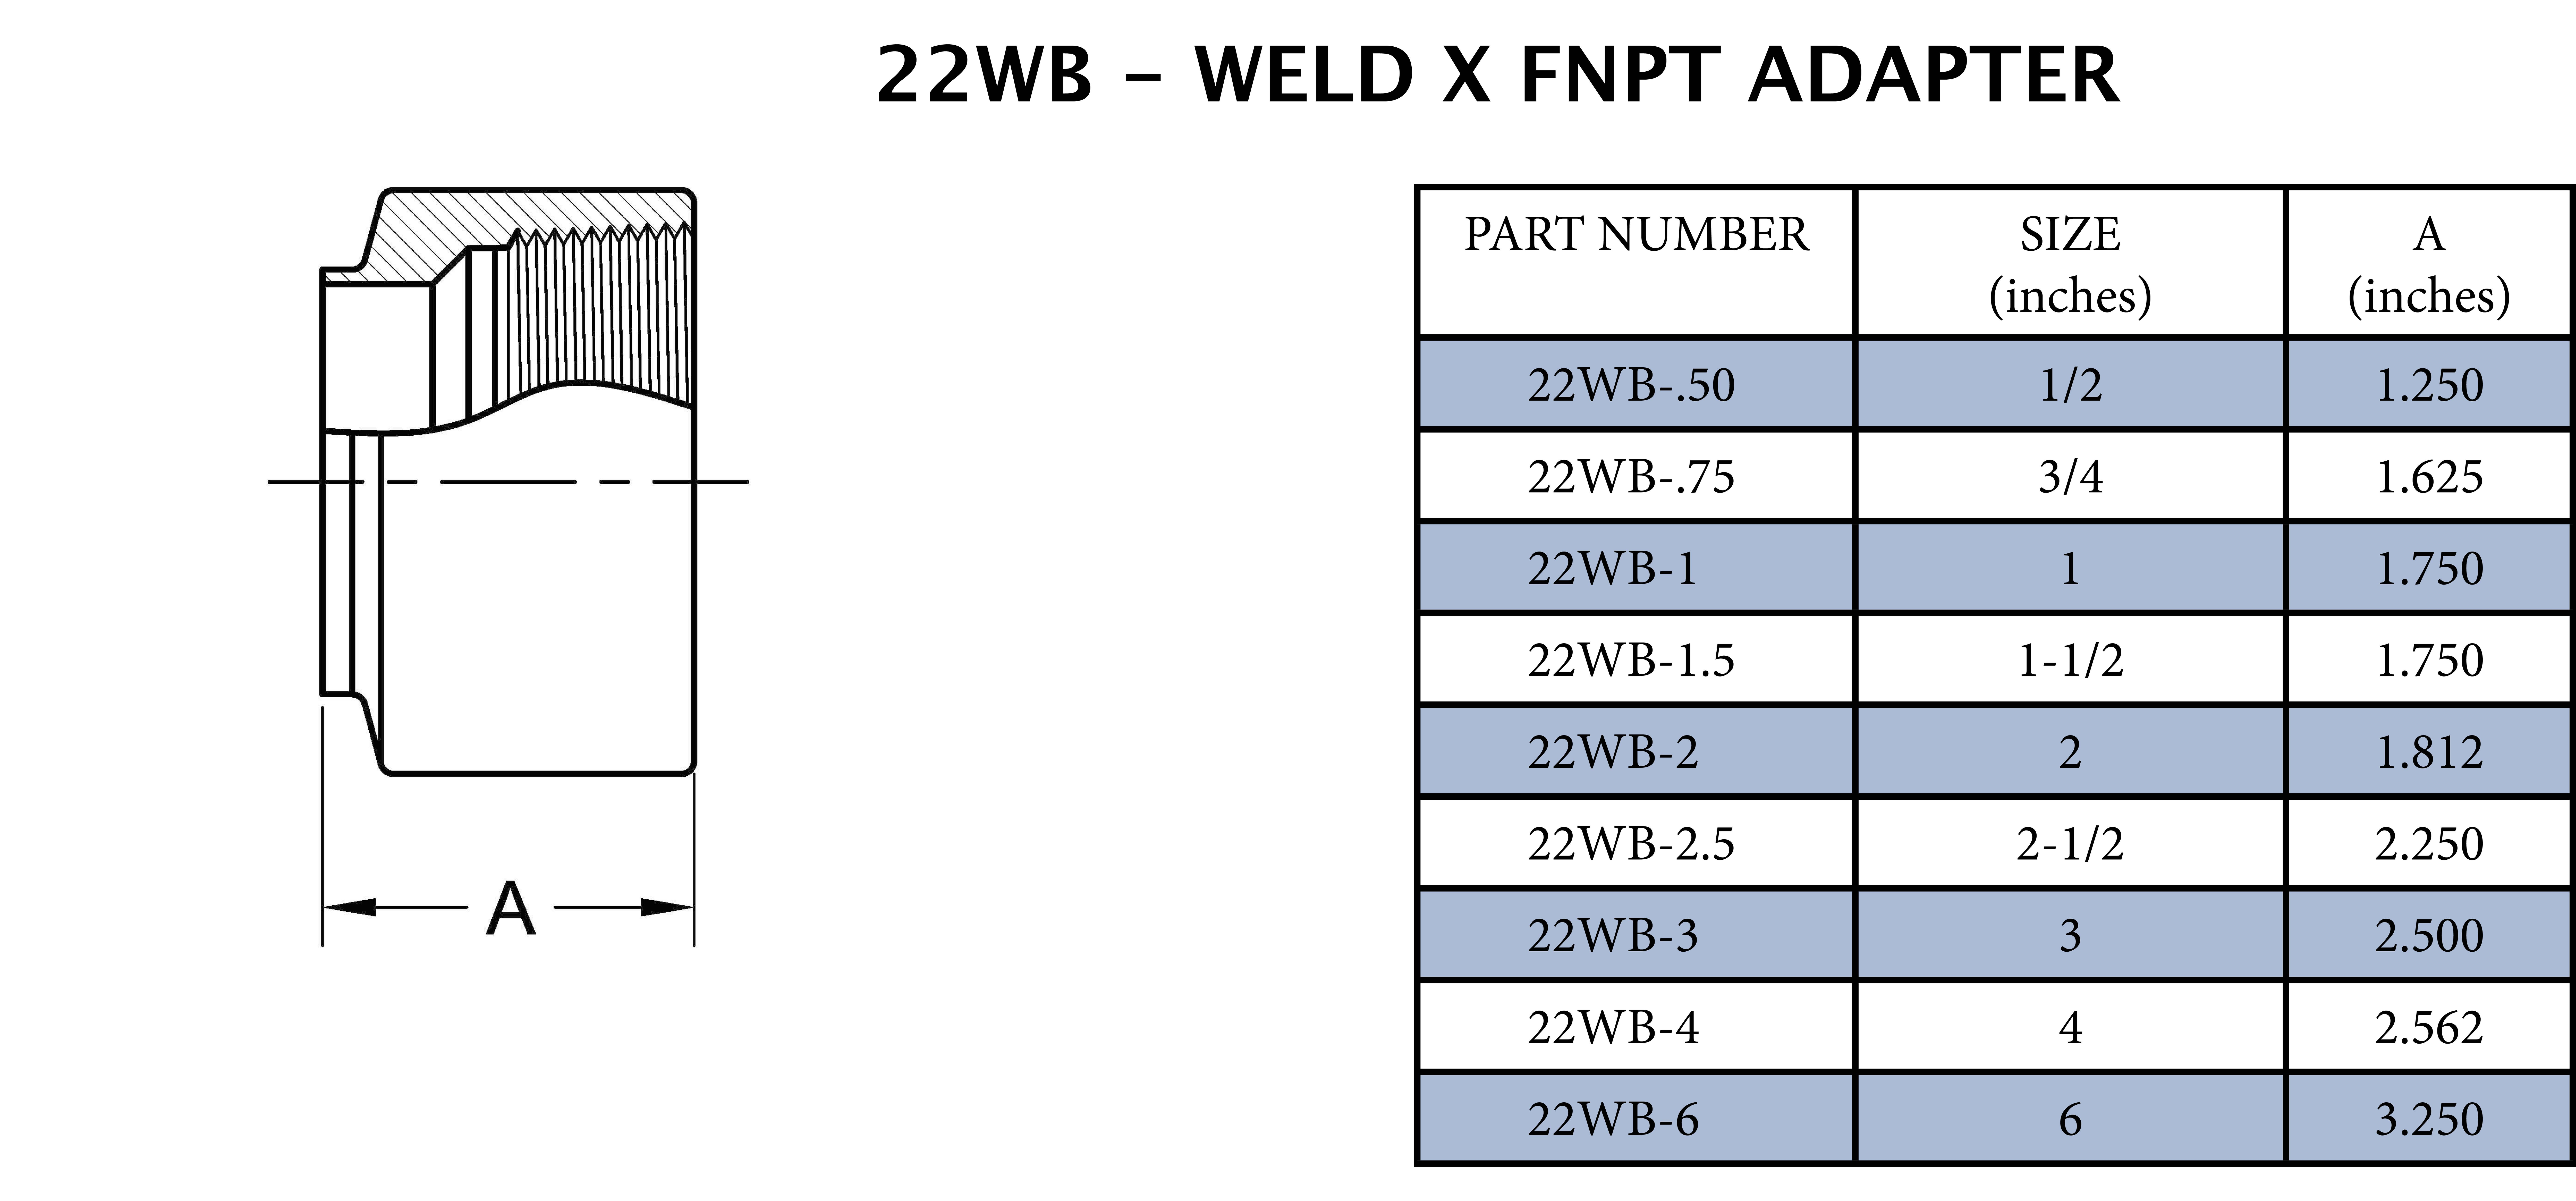 4 Butt Weld End X Fnpt Adapter - 2.562 Long 316SS